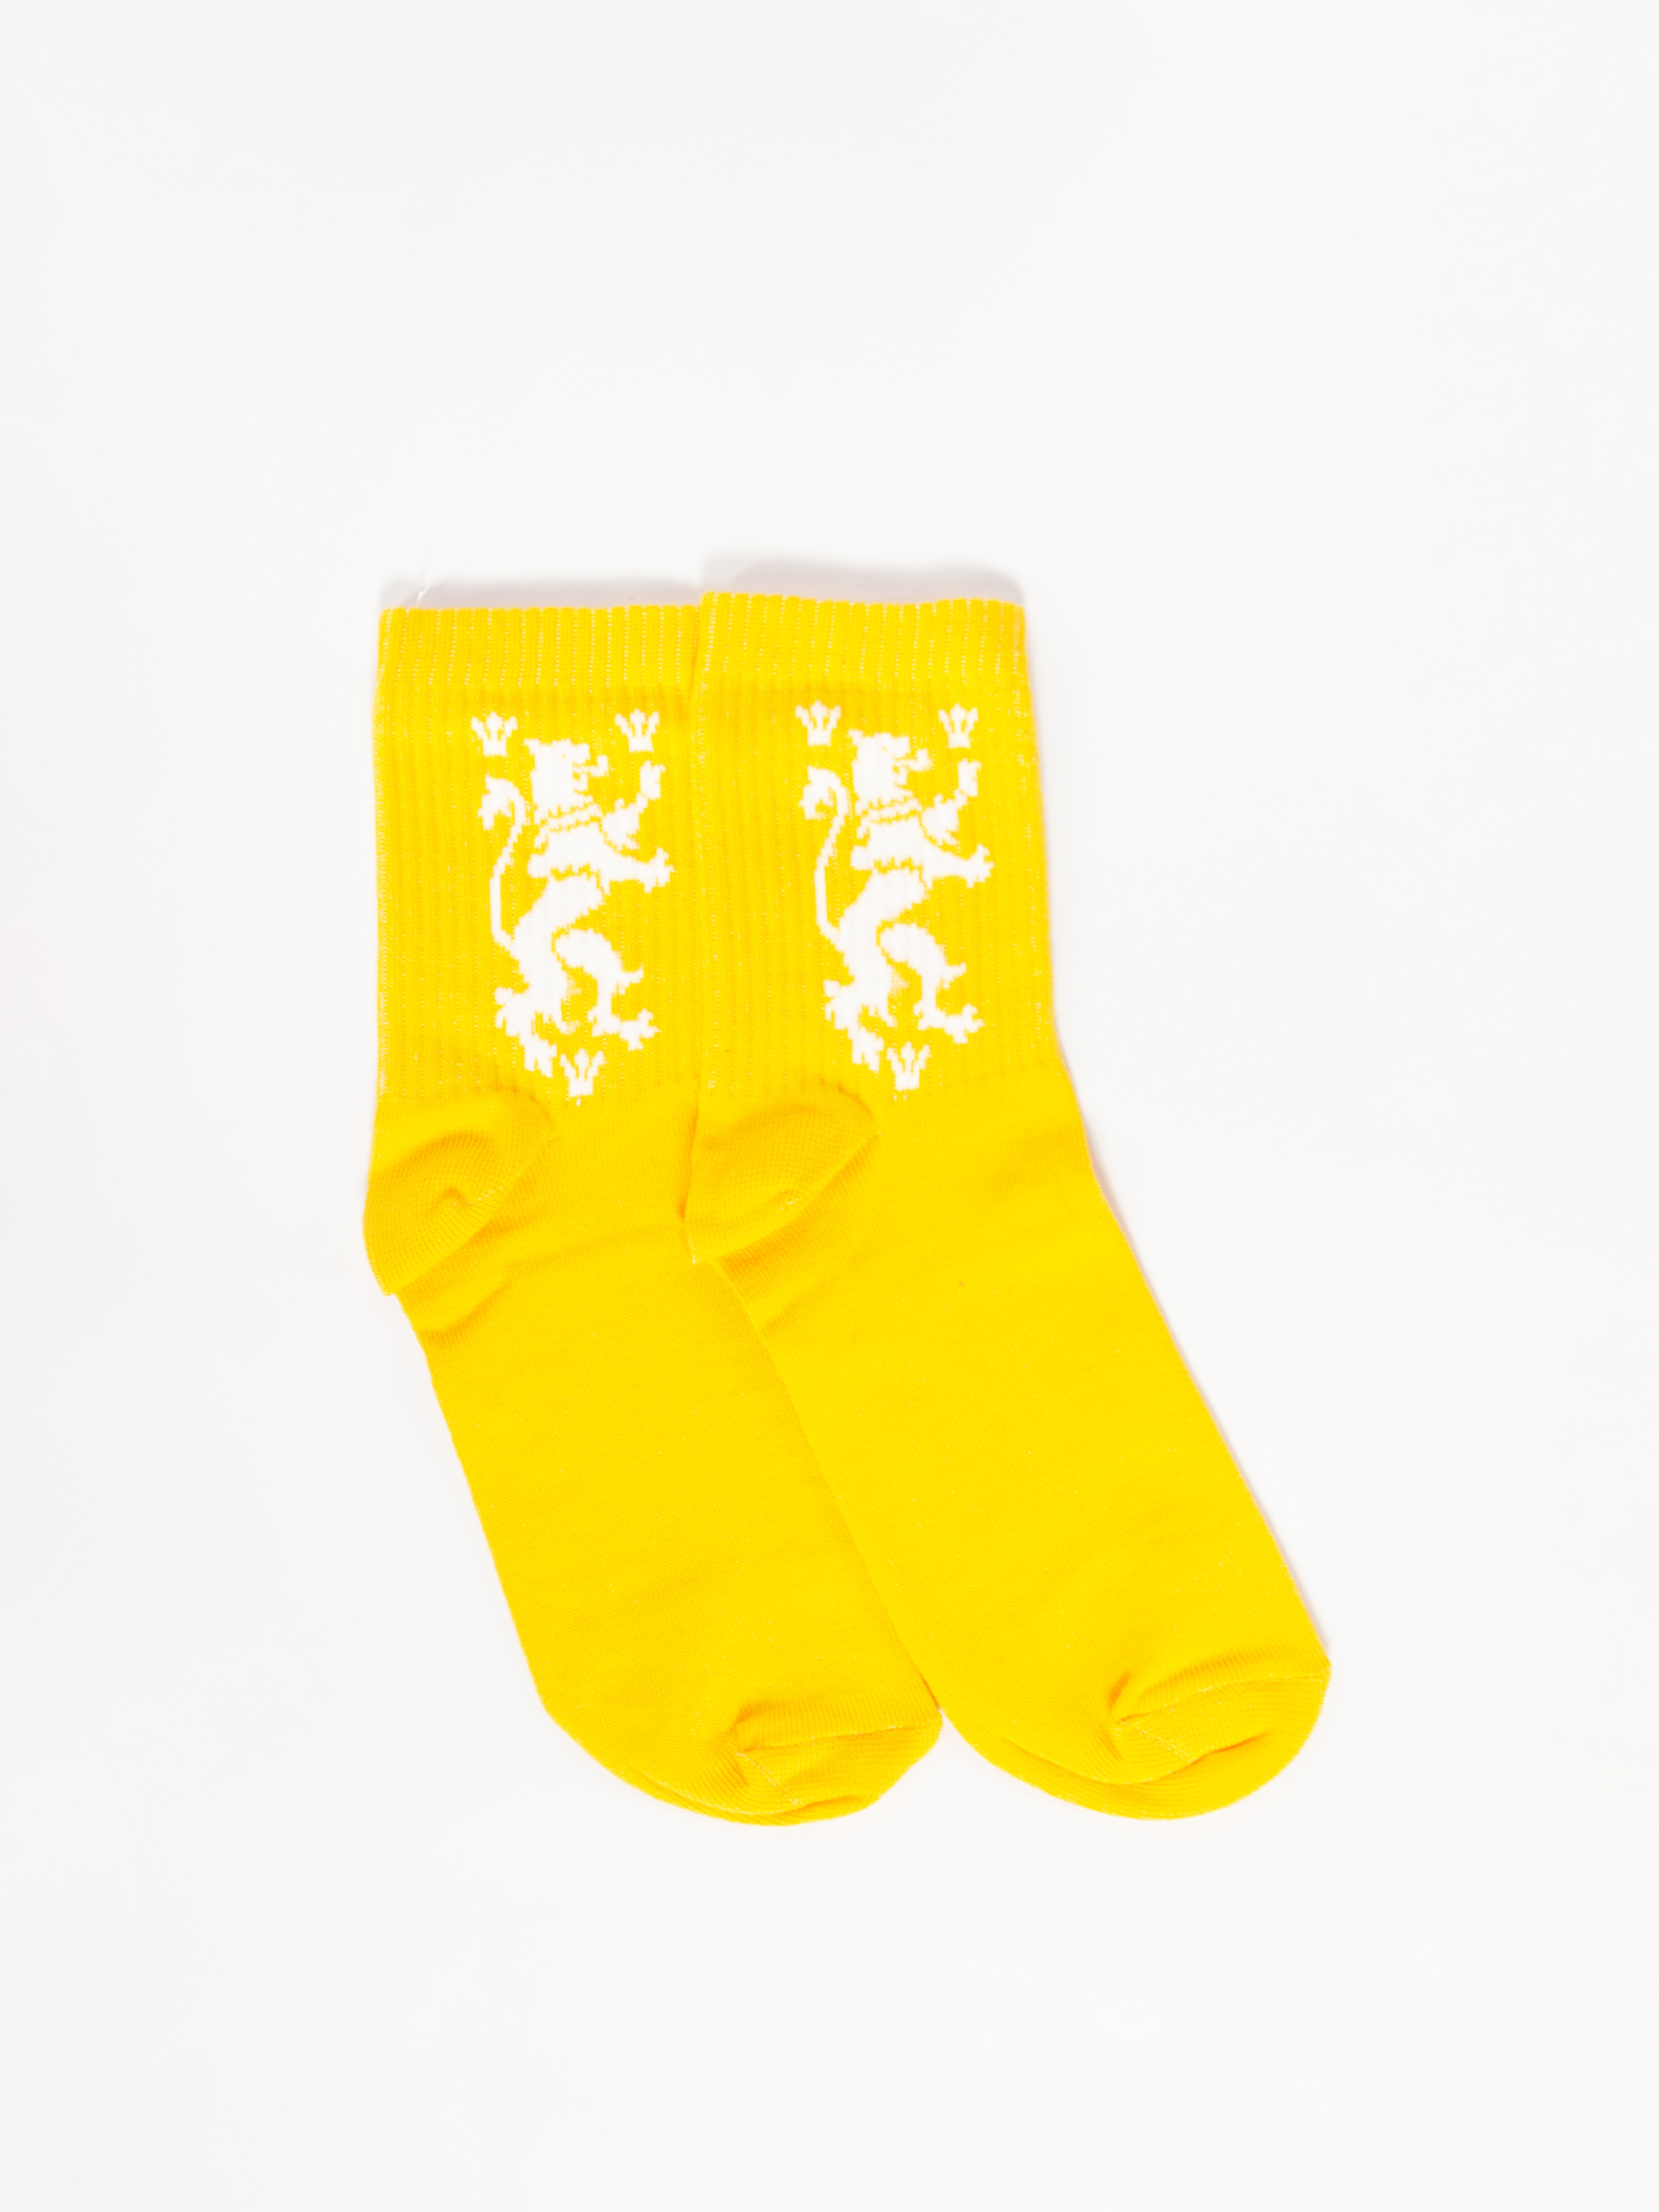 Шкарпетки Лев. Колір жовтий. 2.